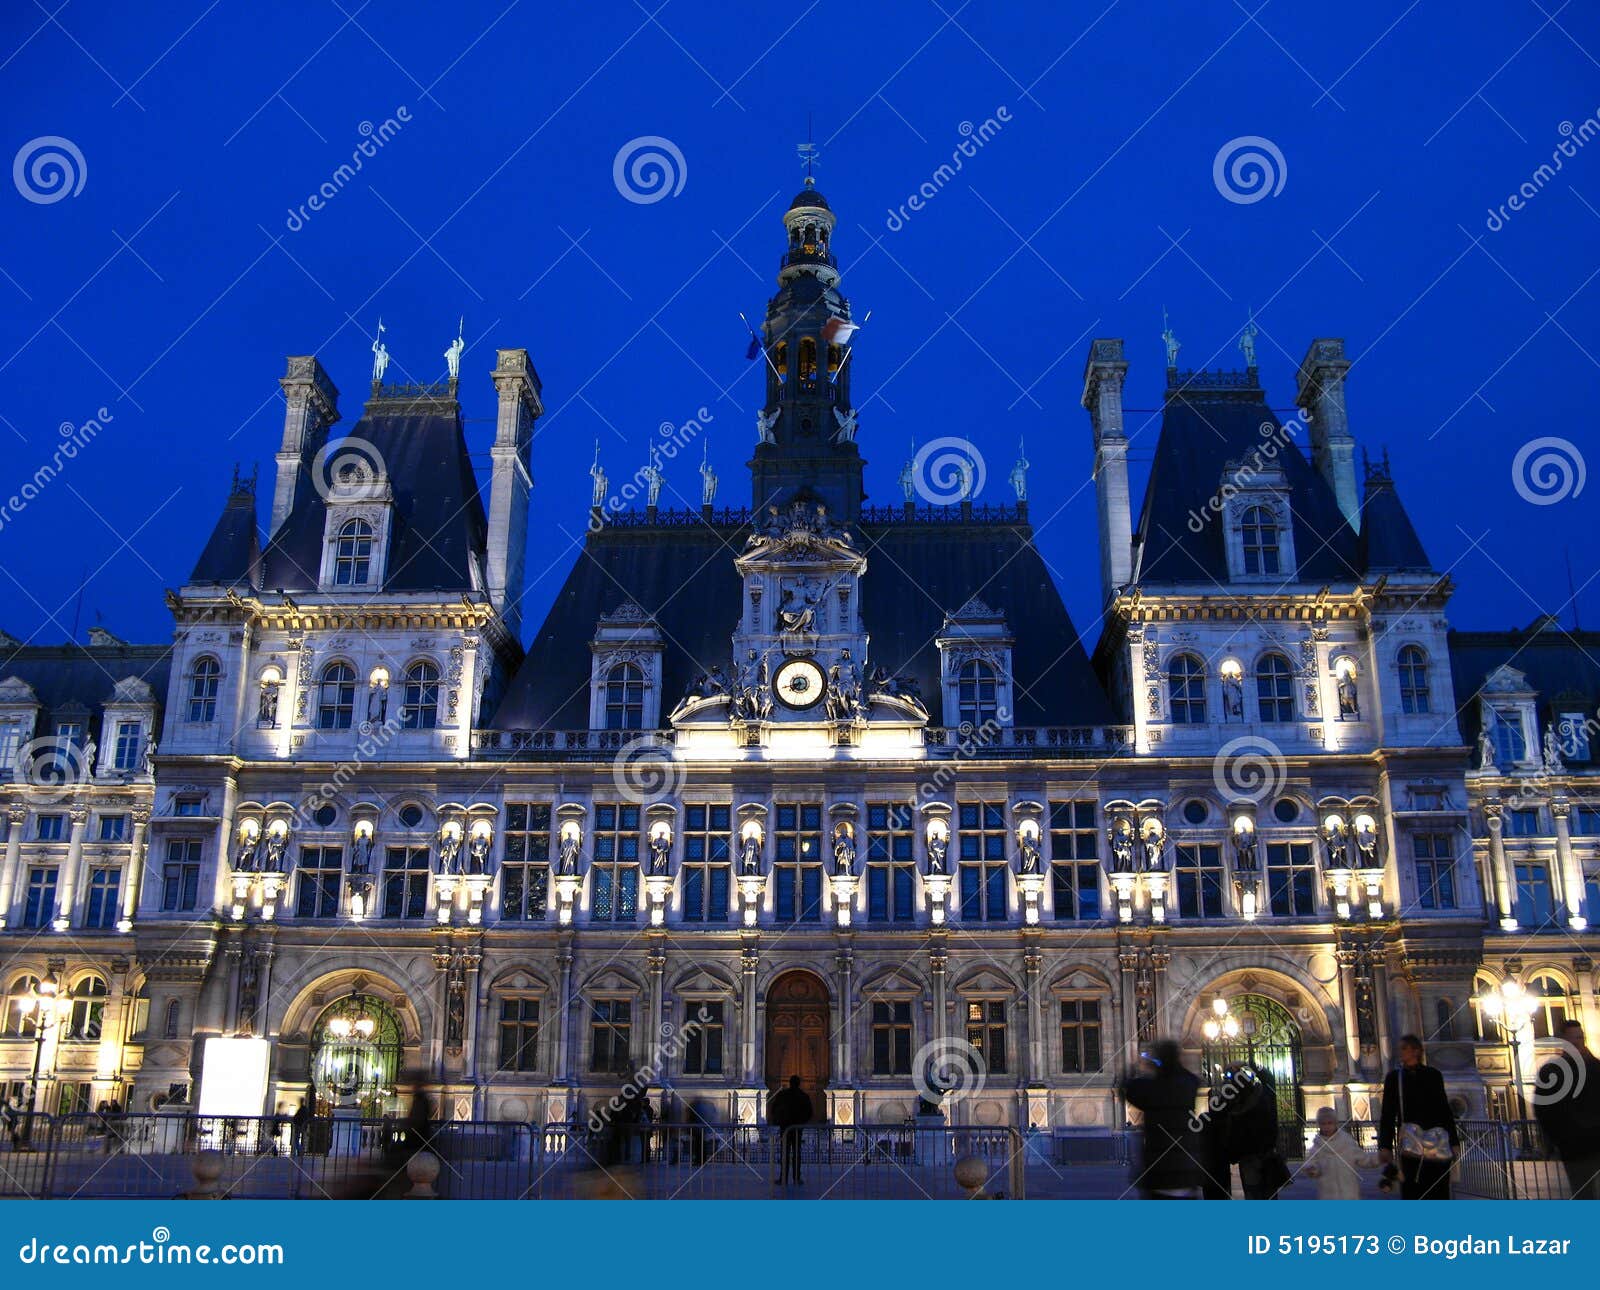 Het Stadhuis Van Parijs Bij Nacht 01, Frankrijk Stock Afbeelding ...